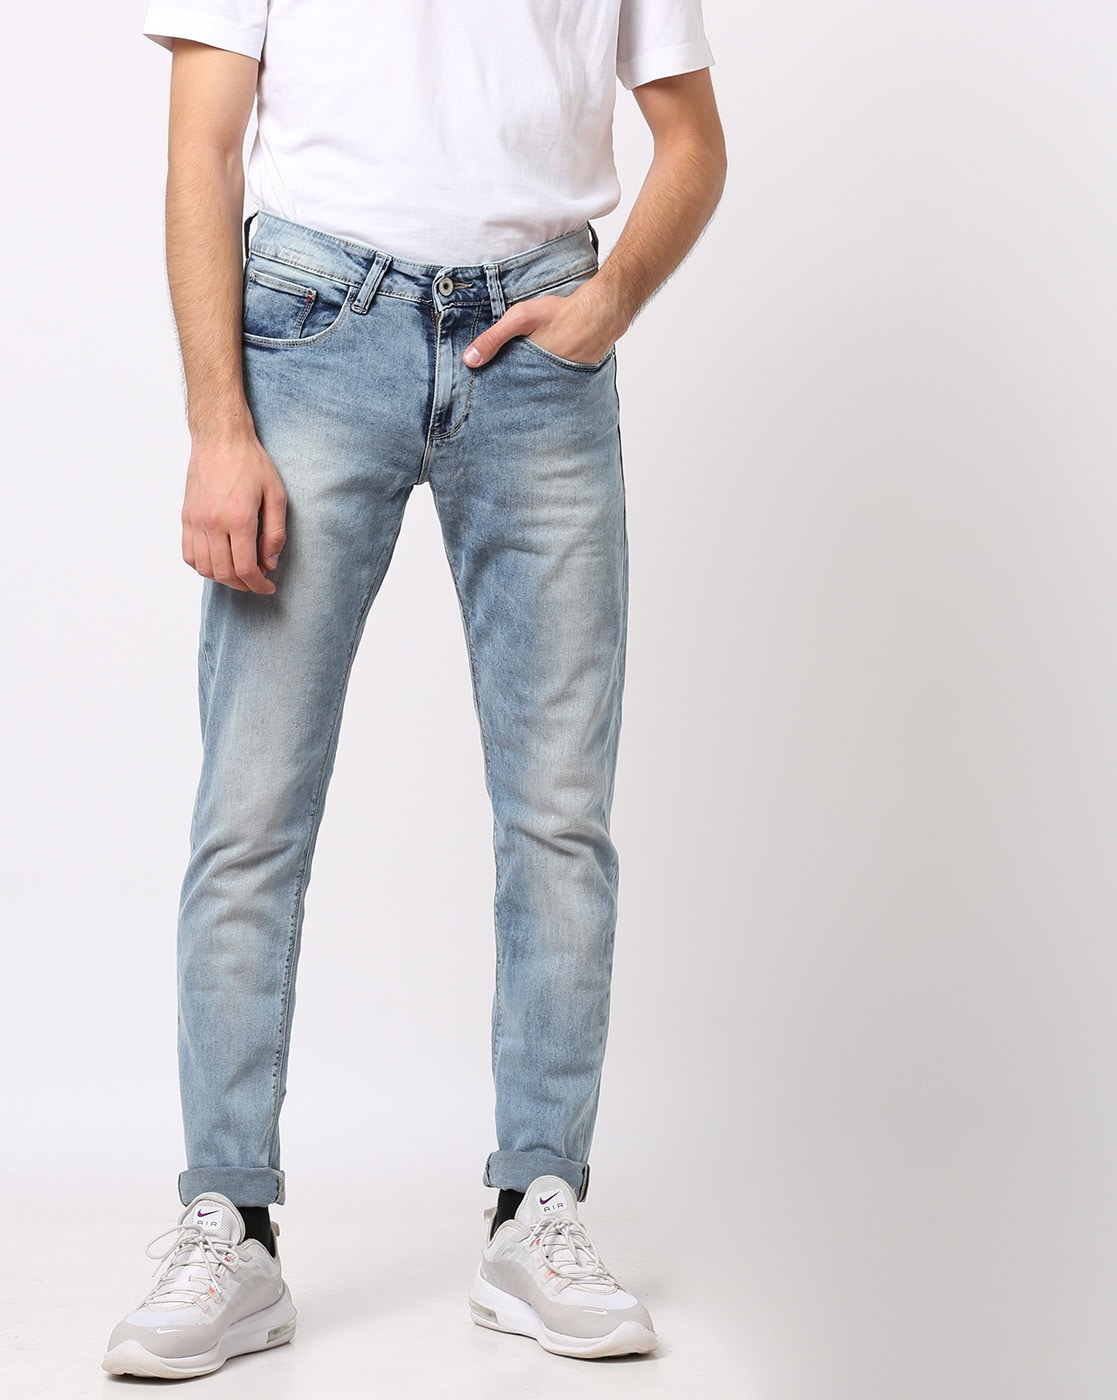 celio jeans online